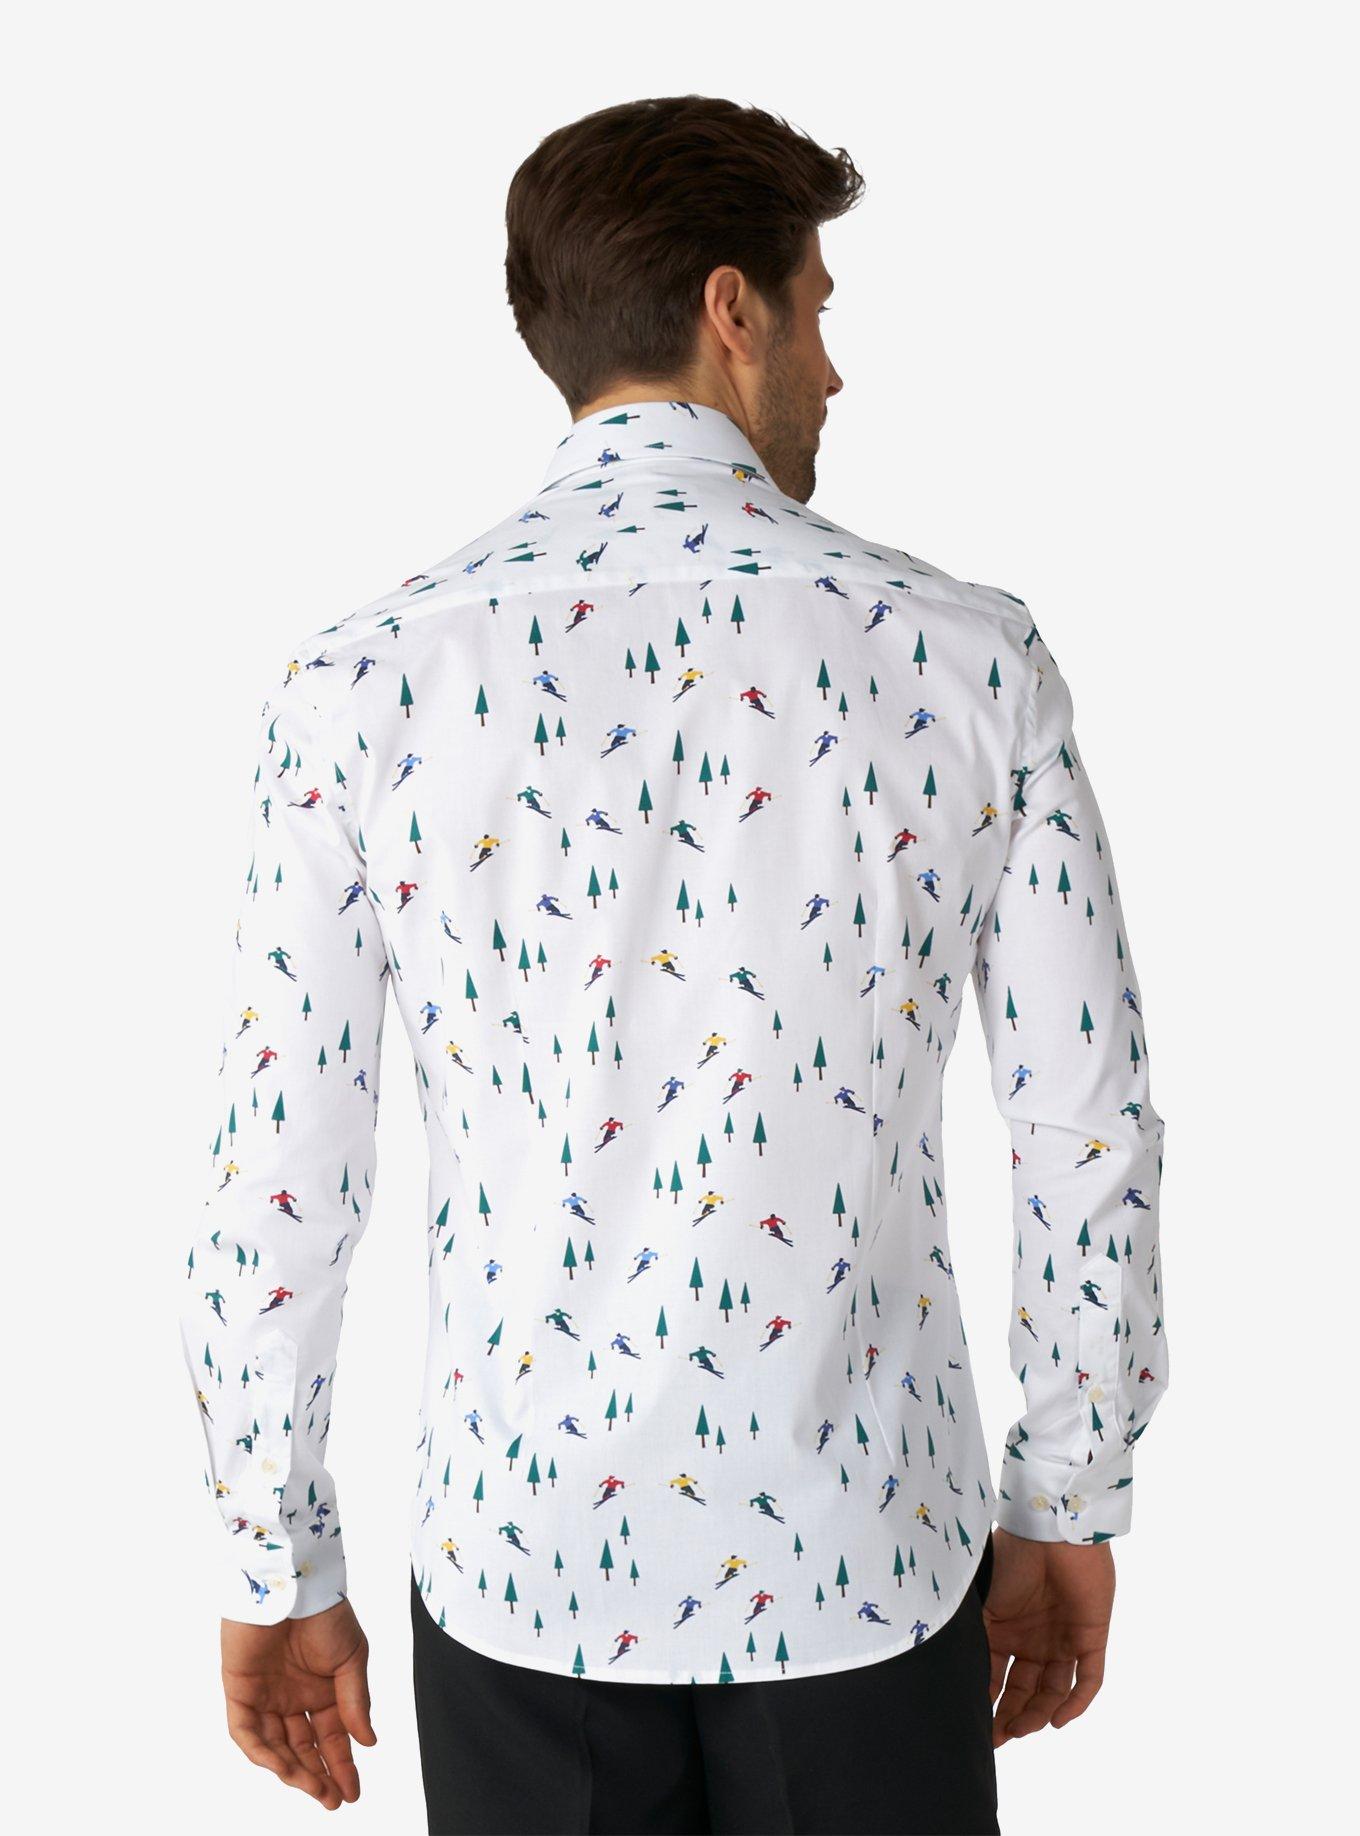 Winter Sprinter Long Sleeve Button-Up Shirt